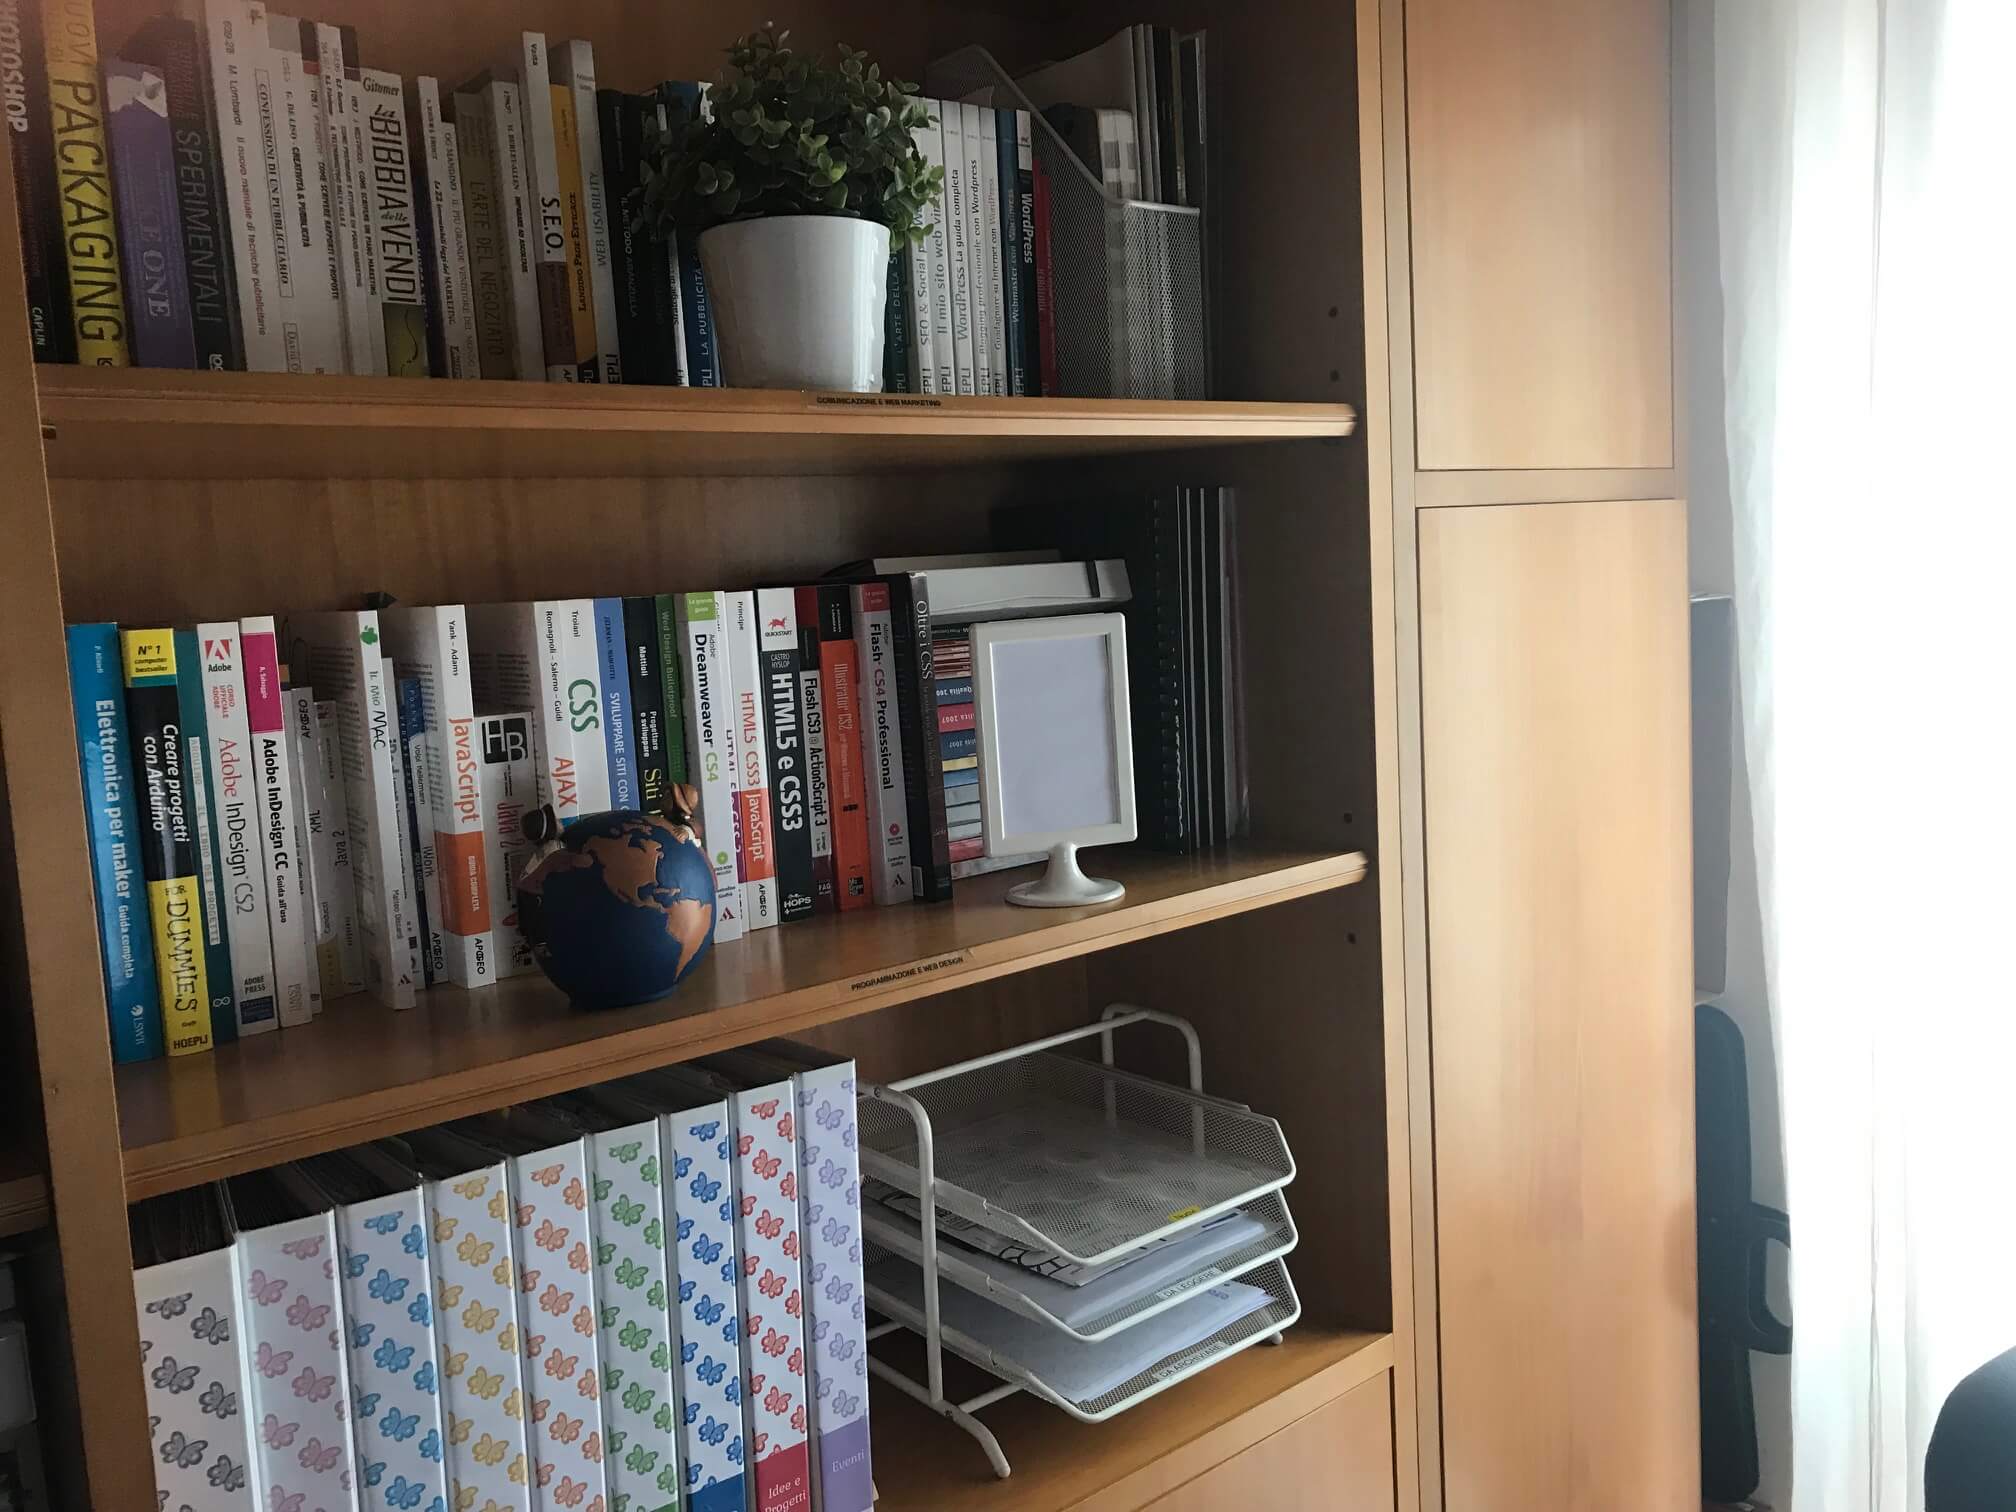 Organizzare casa - Angolo libreria studio organizzata e in ordine Serena Mattia Professional Organizer, home organizer, personal organizer a Lugano, Ticino, Svizzera e Italia